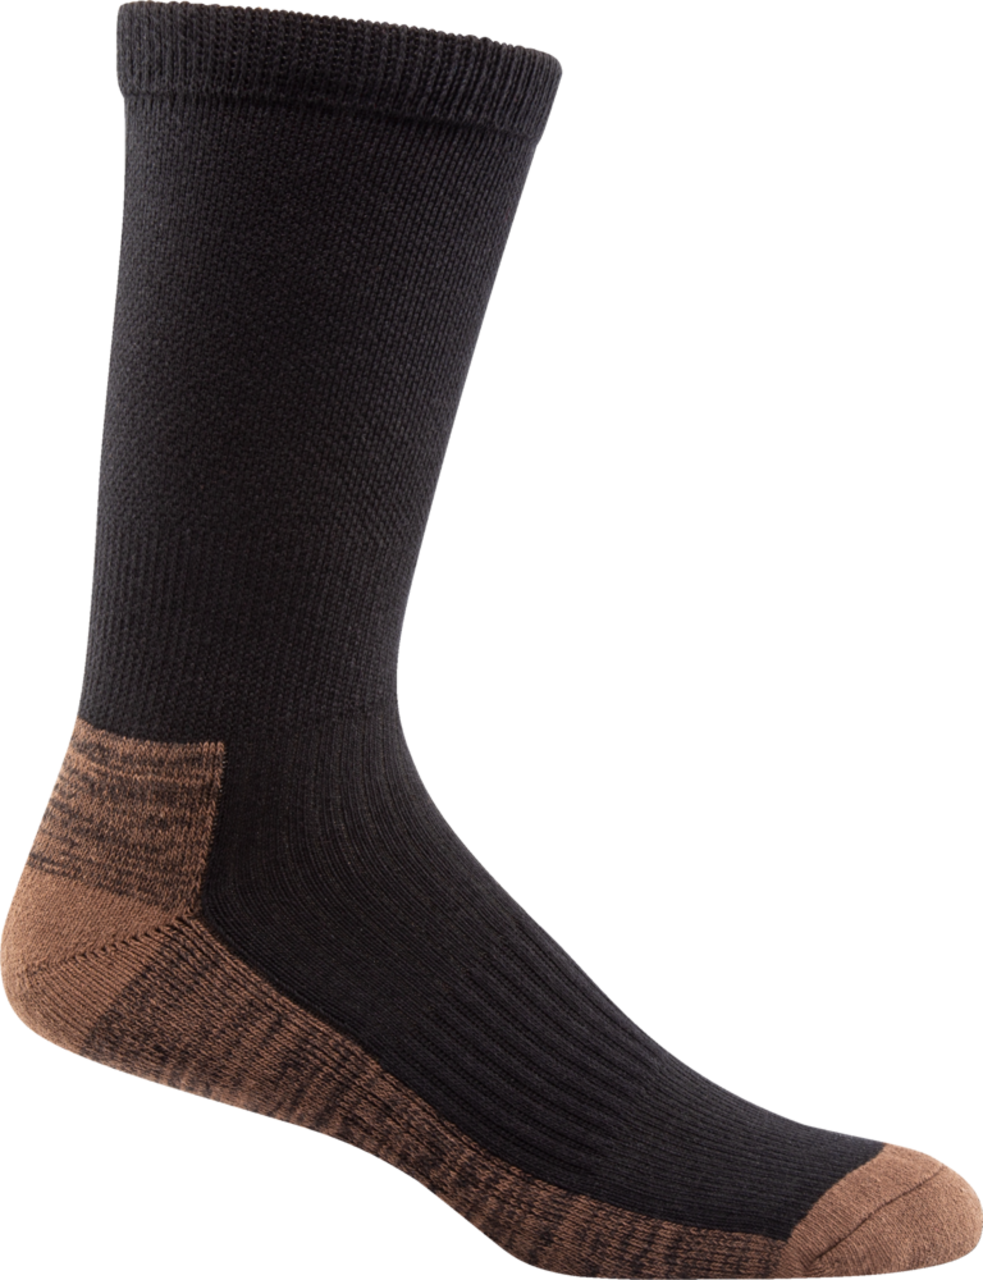 Terra Men's Steel Toe Breathable Work Socks, Fully Cushioned for Comfort,  4-pk, Black